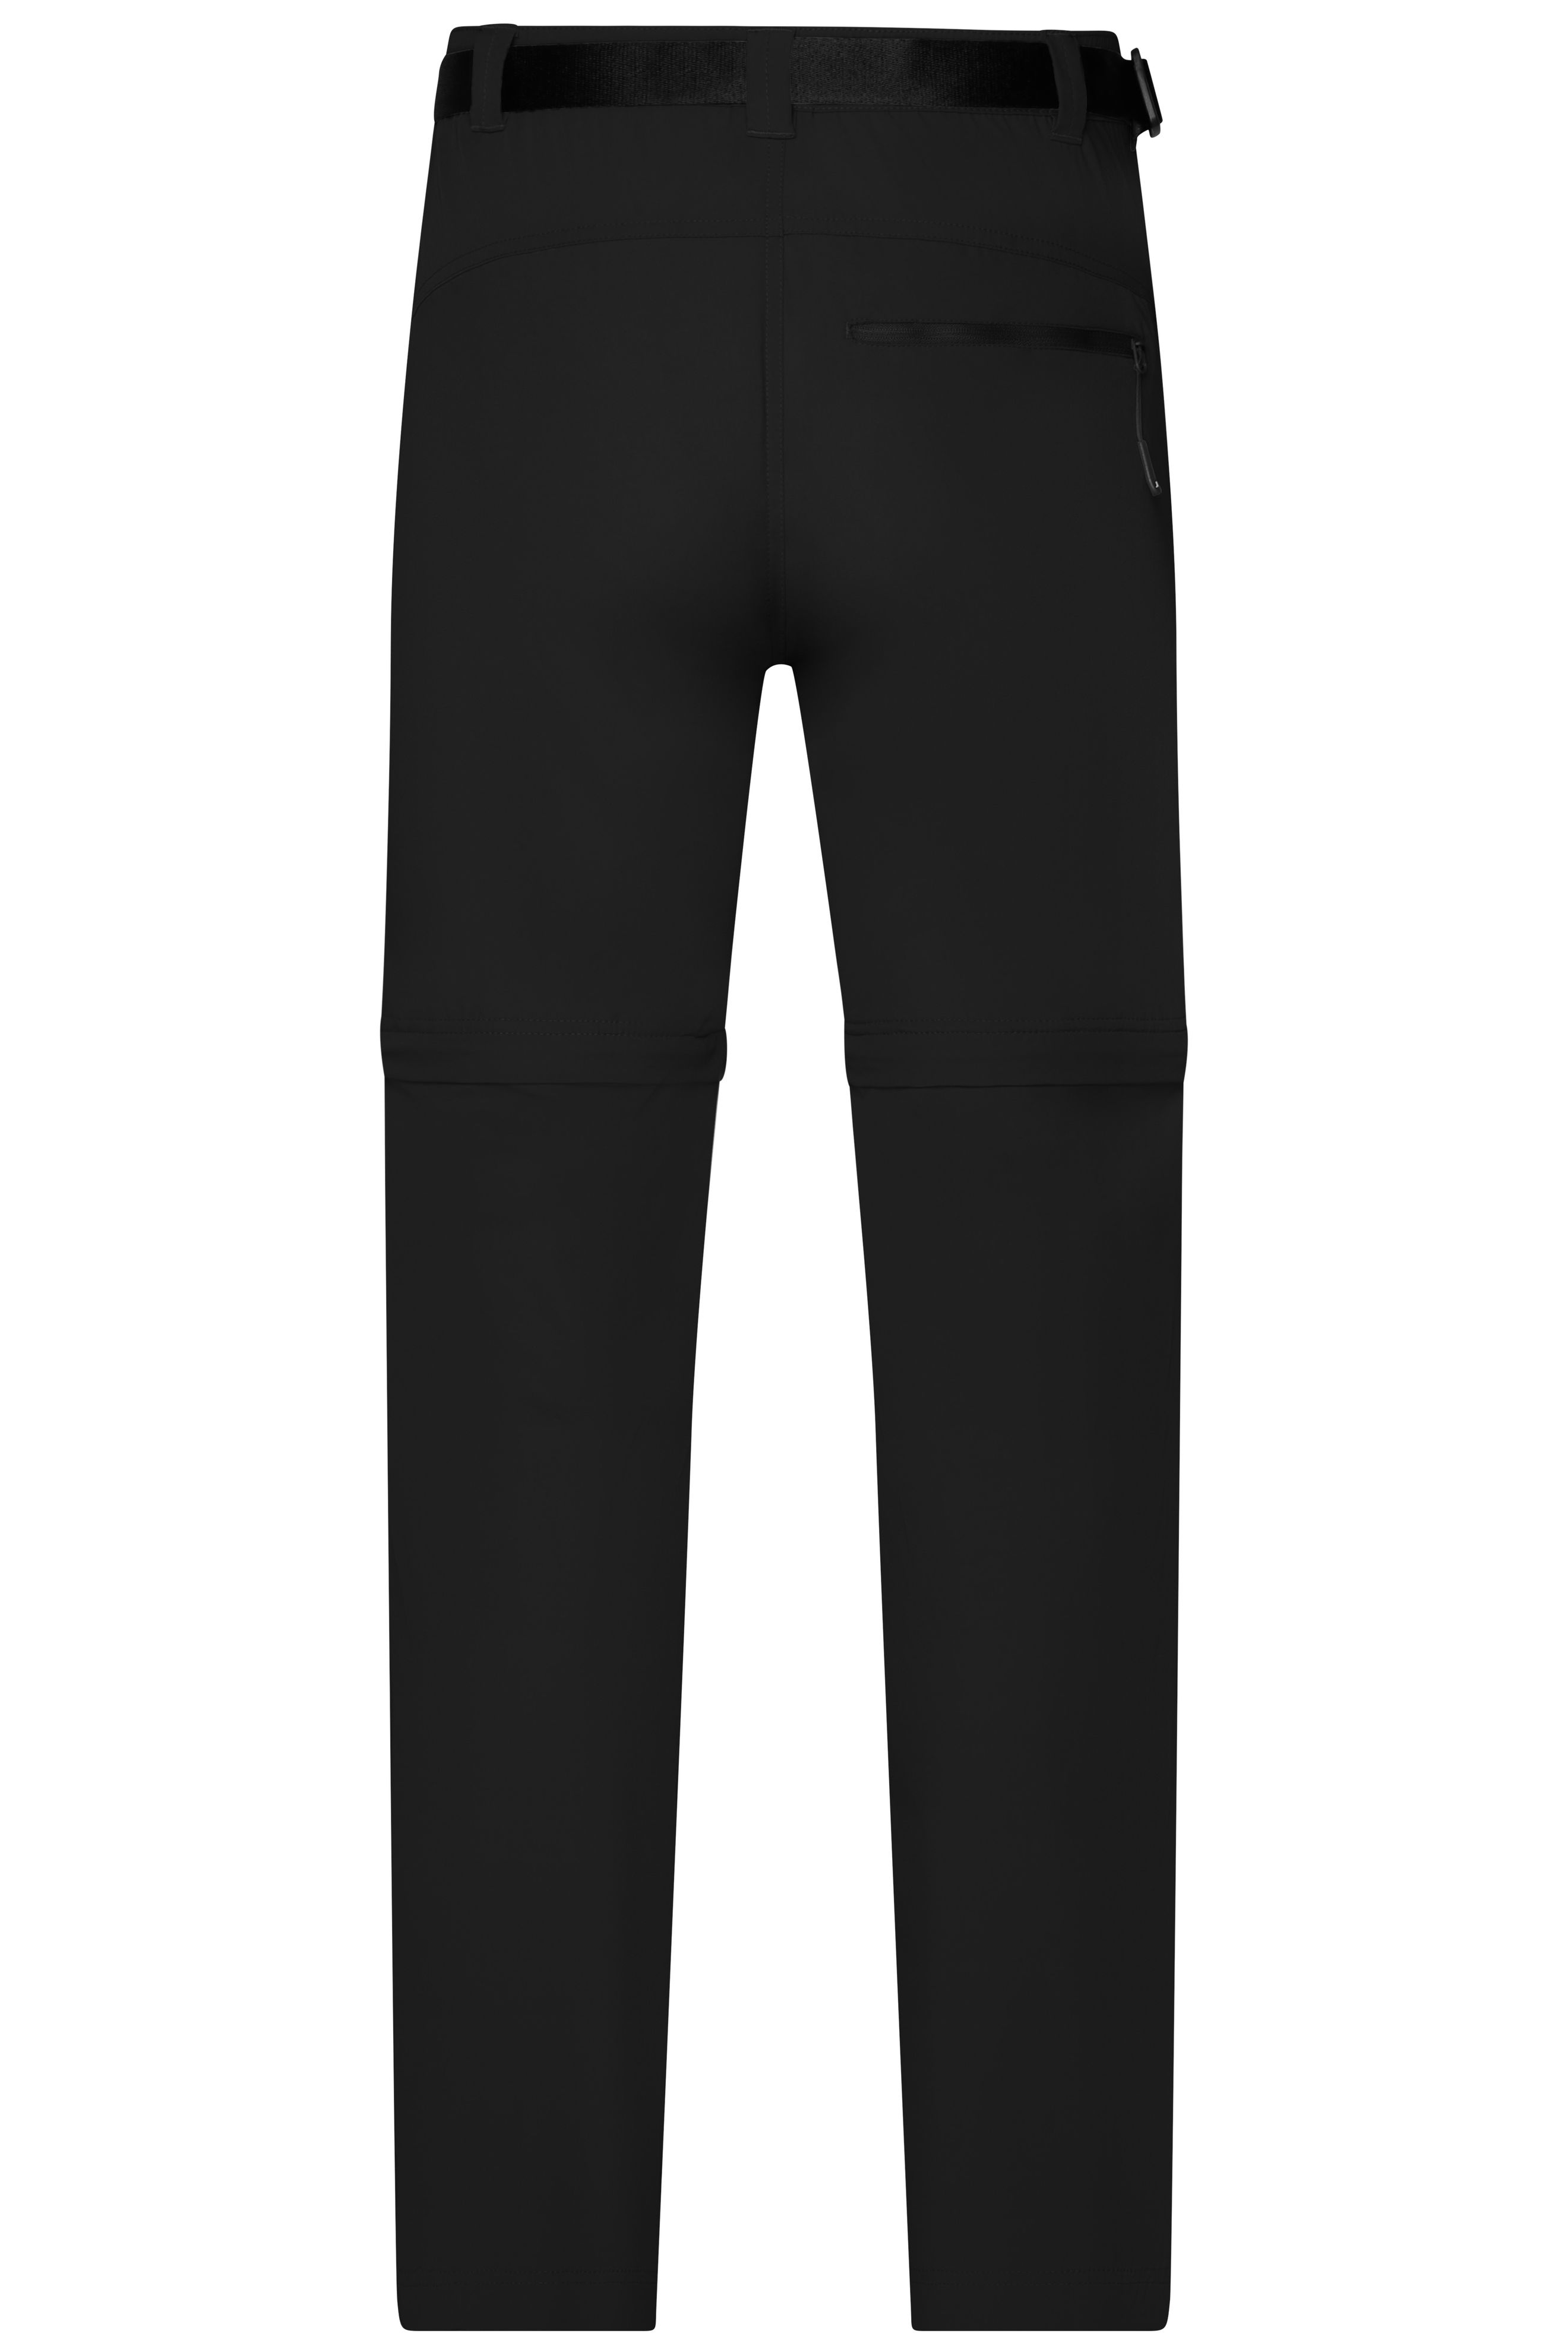 Men's Zip-Off Trekking Pants JN1202 Bi-elastische Outdoorhose in sportlicher Optik